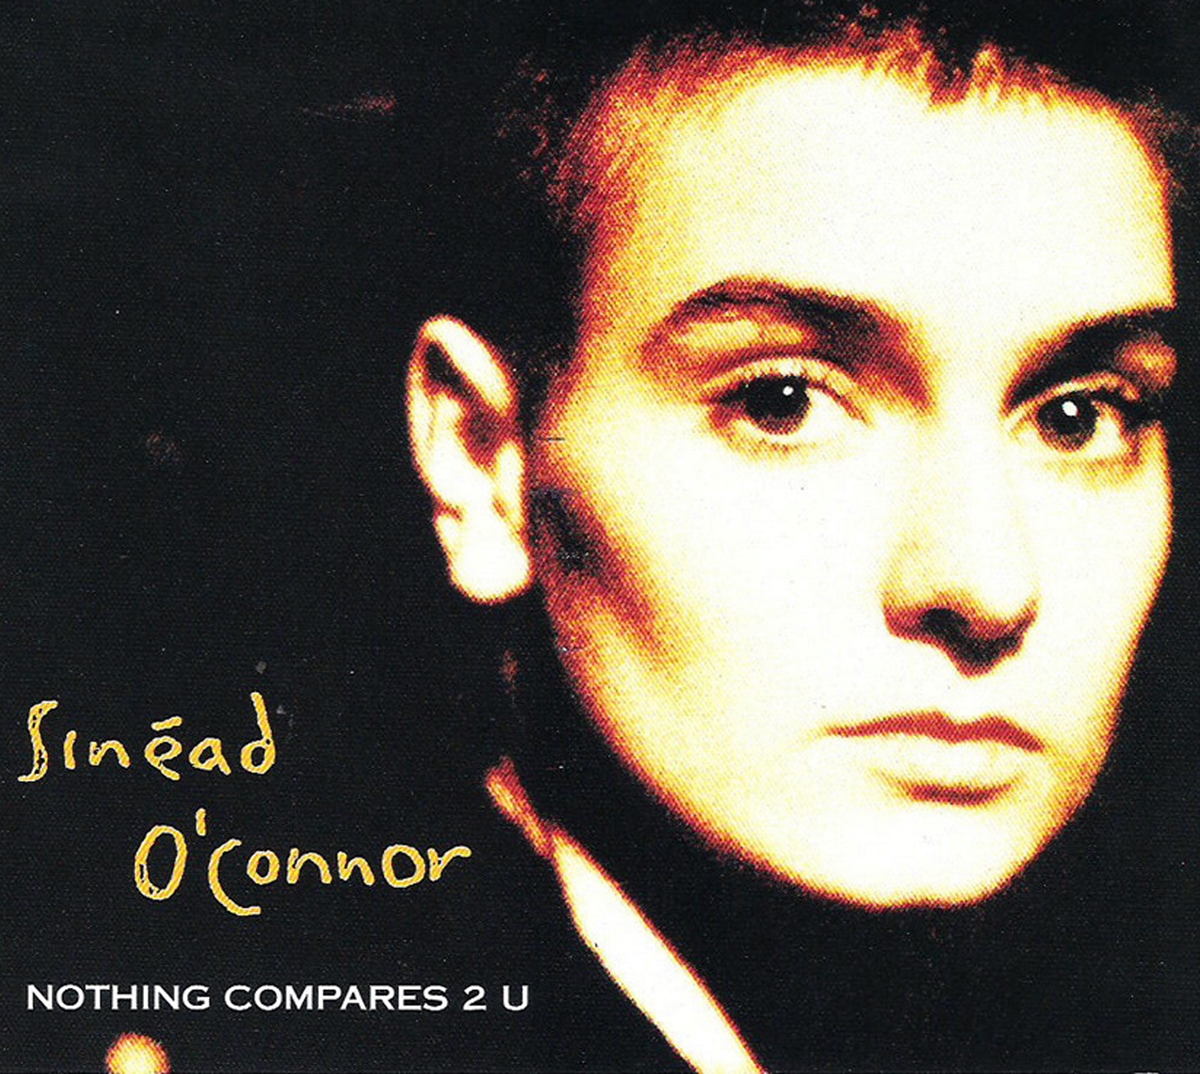 Шинейд о коннор nothing compares 2 u. Sinéad o'Connor nothing compares 2u. Nothing compares 2 u Шинейд о’Коннор. Sinéad o'Connor 1990. Nothing compares 2 u Шинейд ОКОННОР.